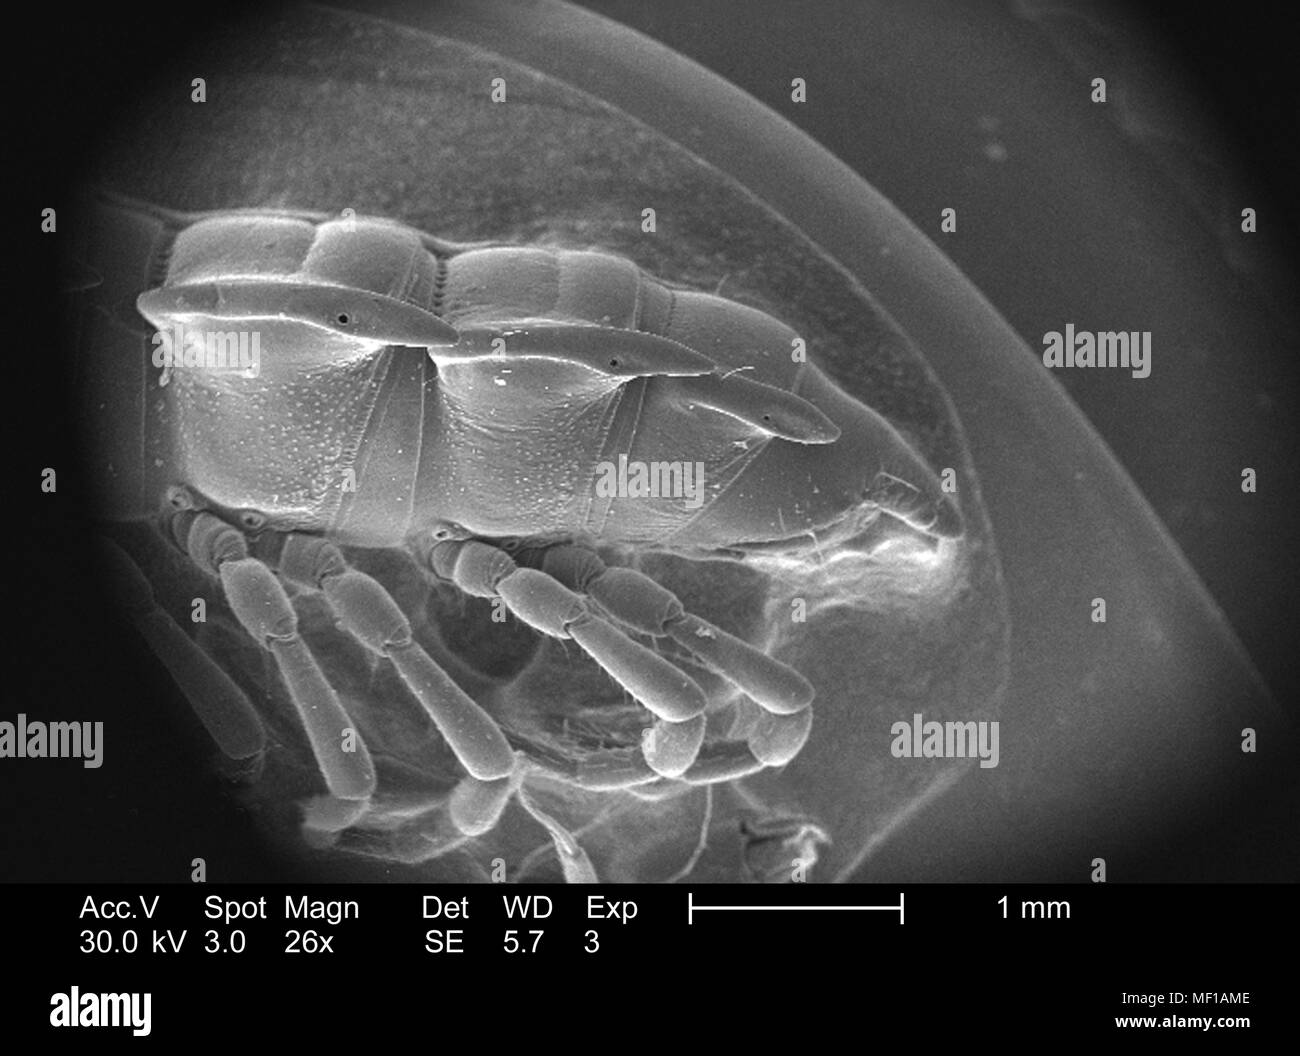 Dettagli morfologiche di un misterioso millepiedi exoskeletal cuticola copertura, raffigurato in 26x di scansione ingrandita al microscopio elettronico (SEM) immagine, 2005. Immagine cortesia di centri per il controllo delle malattie (CDC) / Janice Haney Carr, Oren Mayer. () Foto Stock